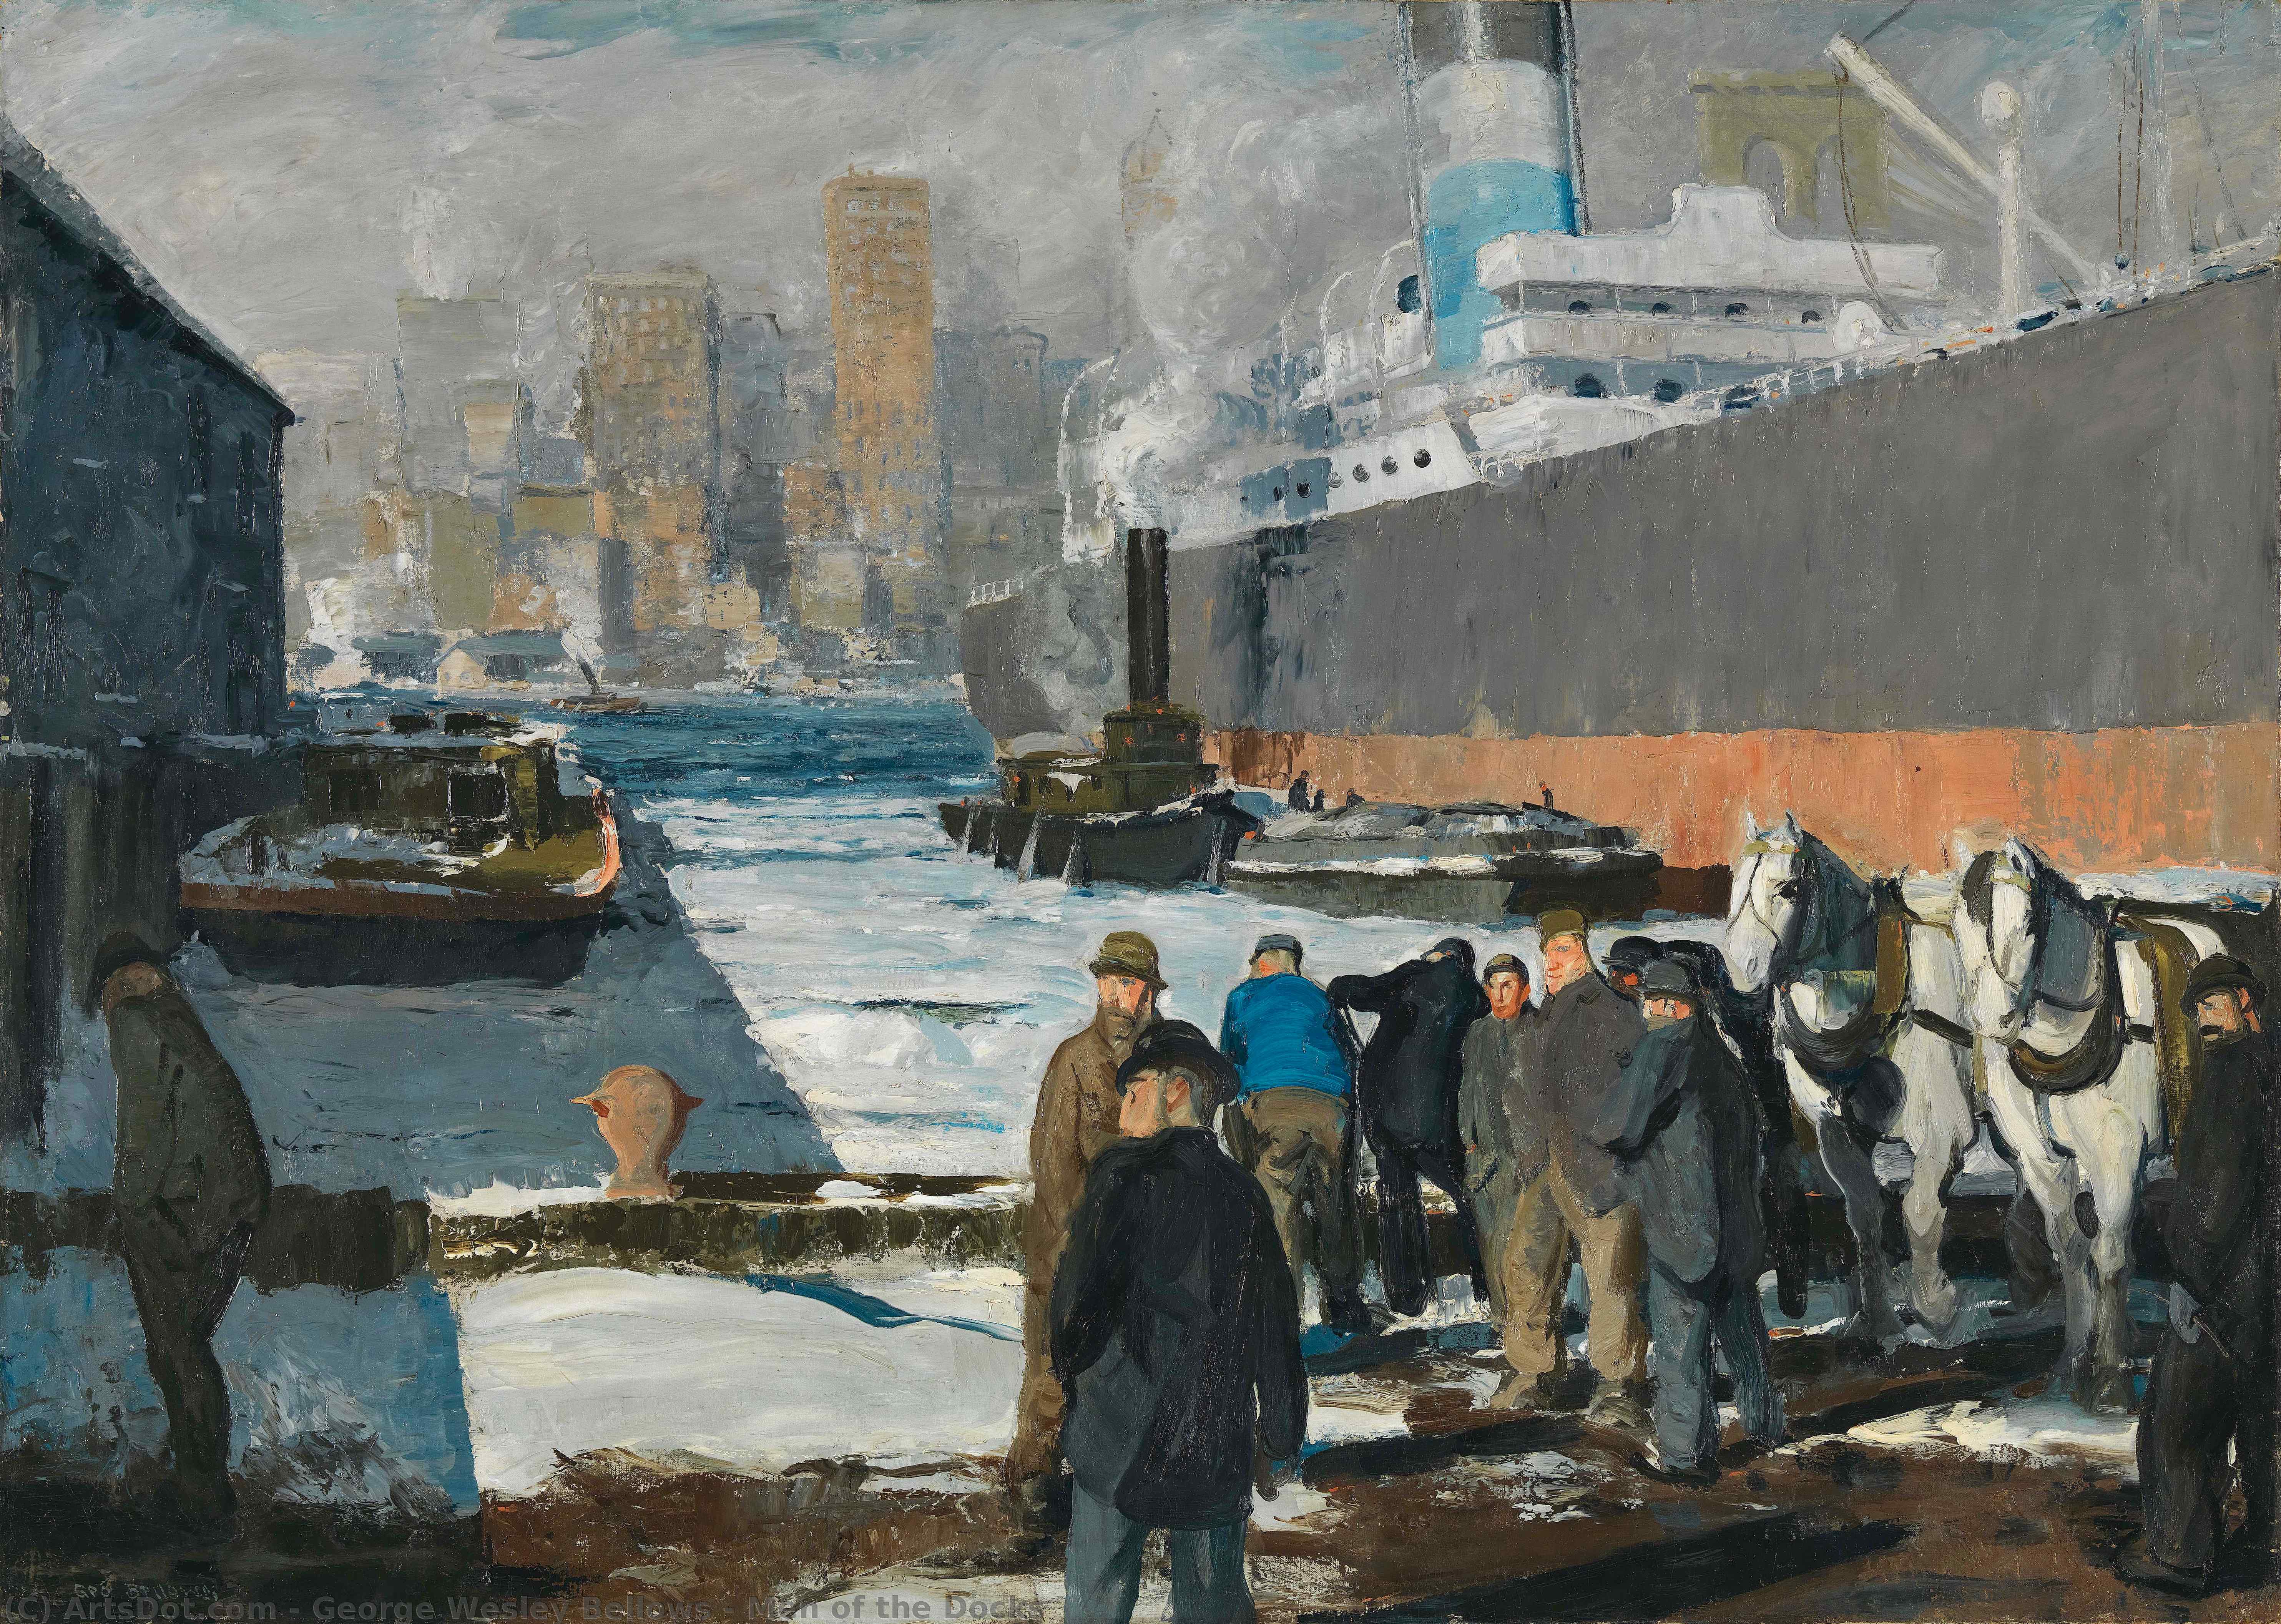 Compra Riproduzioni D'arte Del Museo Uomini dei Docks, 1912 di George Wesley Bellows (1882-1925, United States) | ArtsDot.com